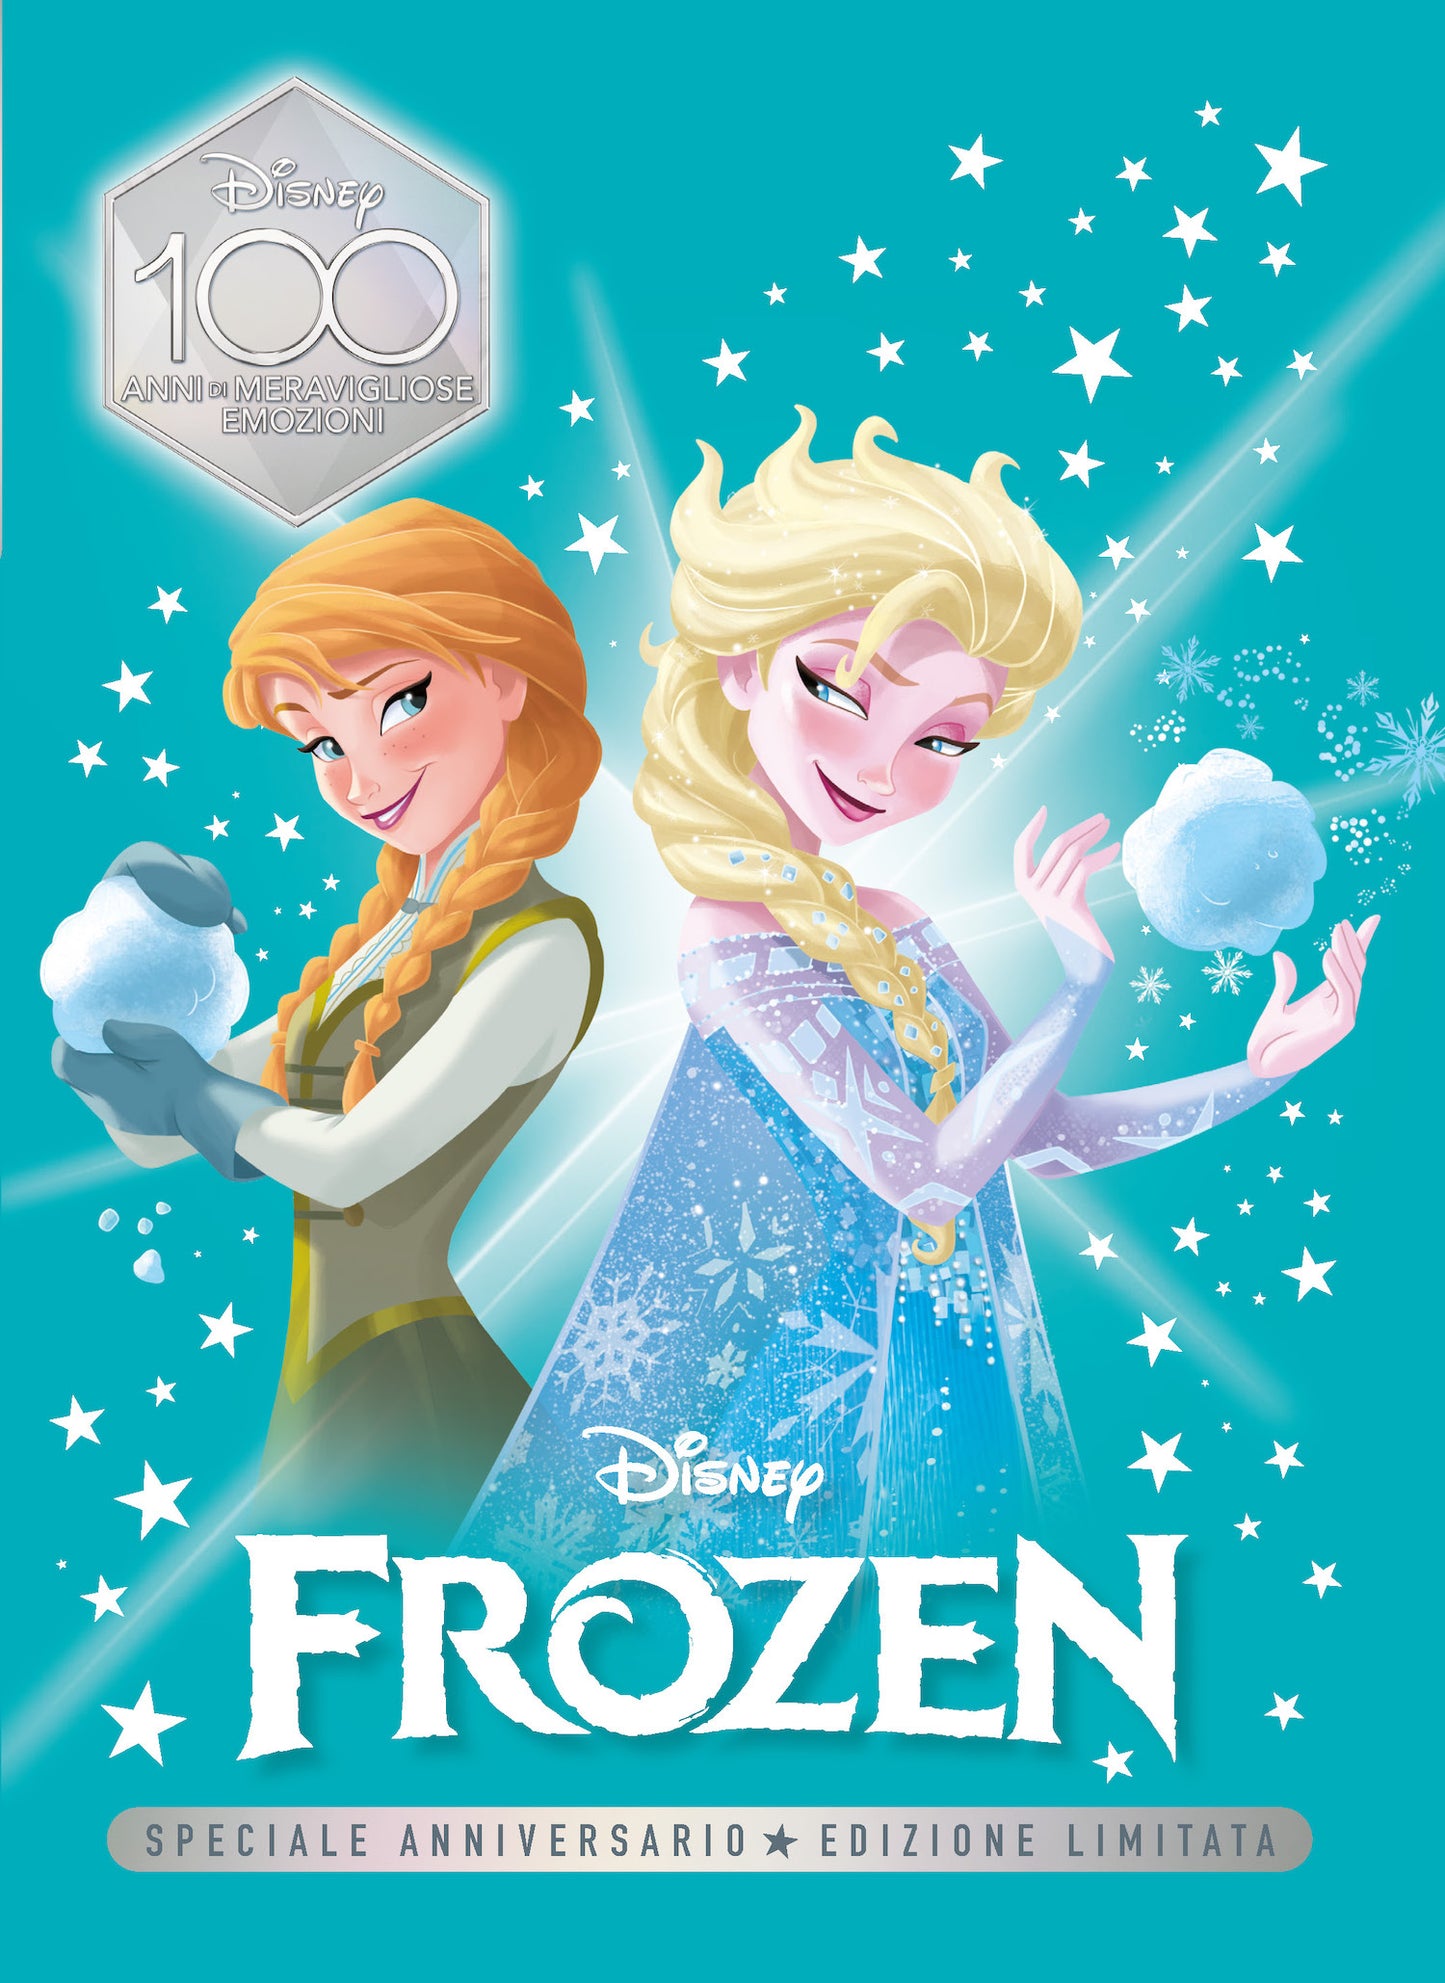 Frozen Speciale Anniversario Edizione limitata. Disney 100 Anni di meravigliose emozioni